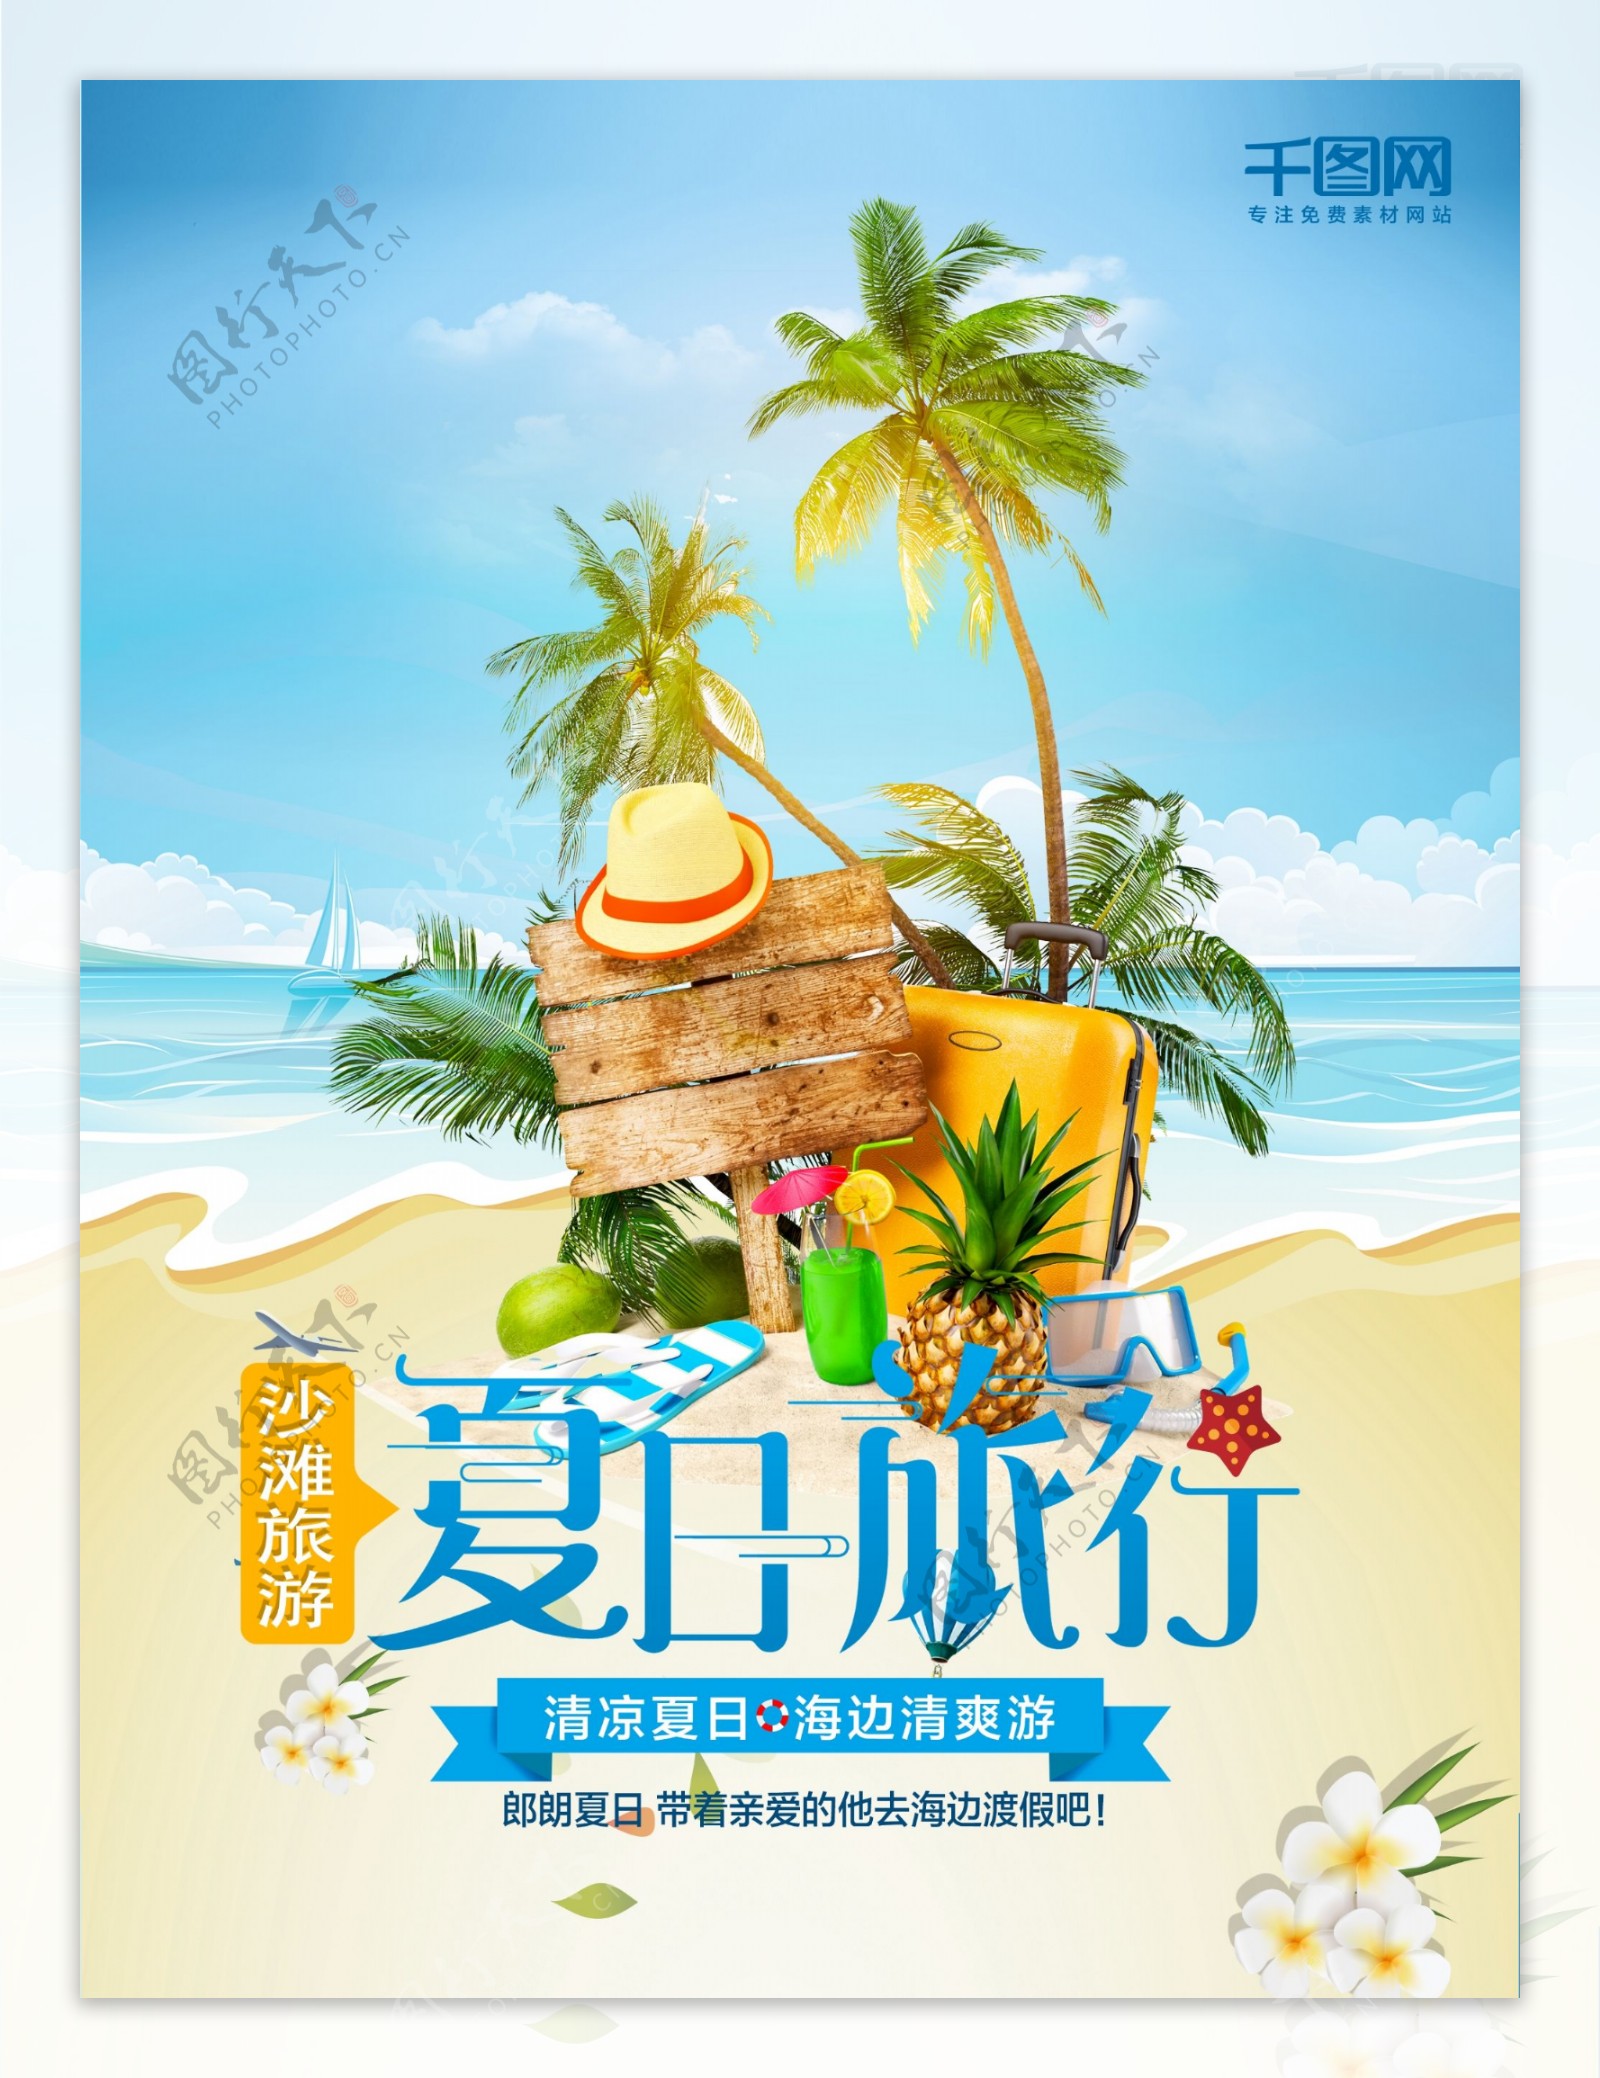 夏日沙滩旅游海报设计